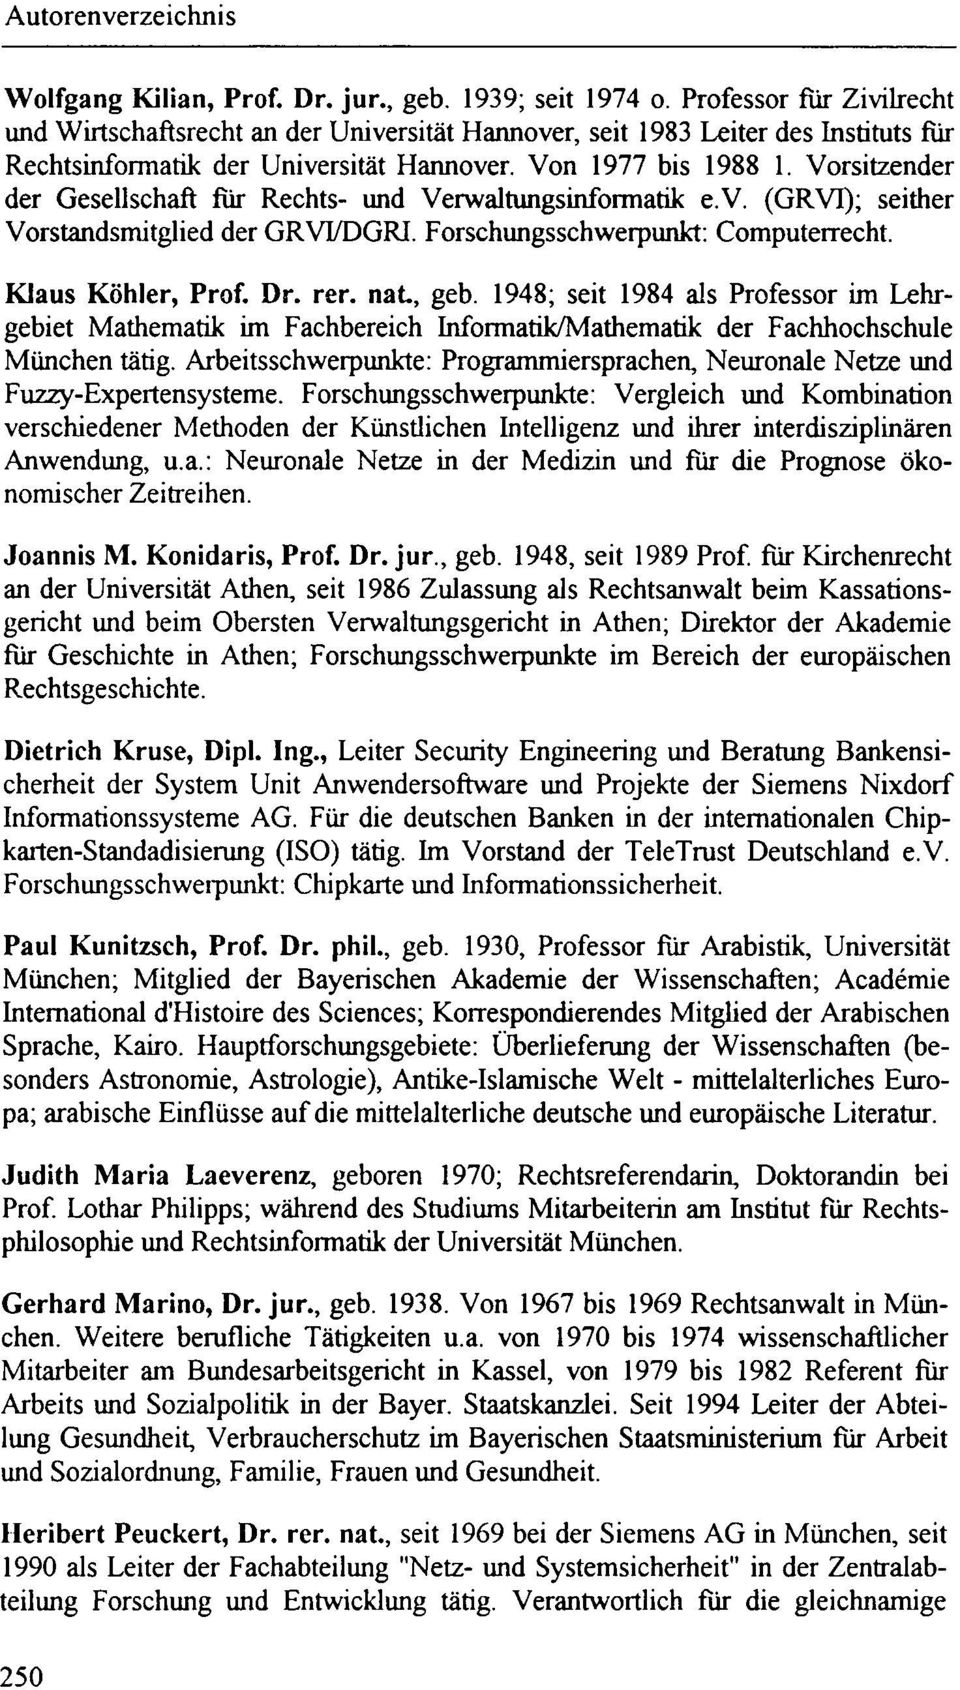 Vorsitzender der Gesellschaft für Rechts- und Verwaltungsinformatik e.v. (GRVT); seither Vorstandsmitglied der GRVT/DGRI. Forschungsschwerpunkt: Computerrecht. Klaus Köhler, Prof. Dr. rer. nat, geb.